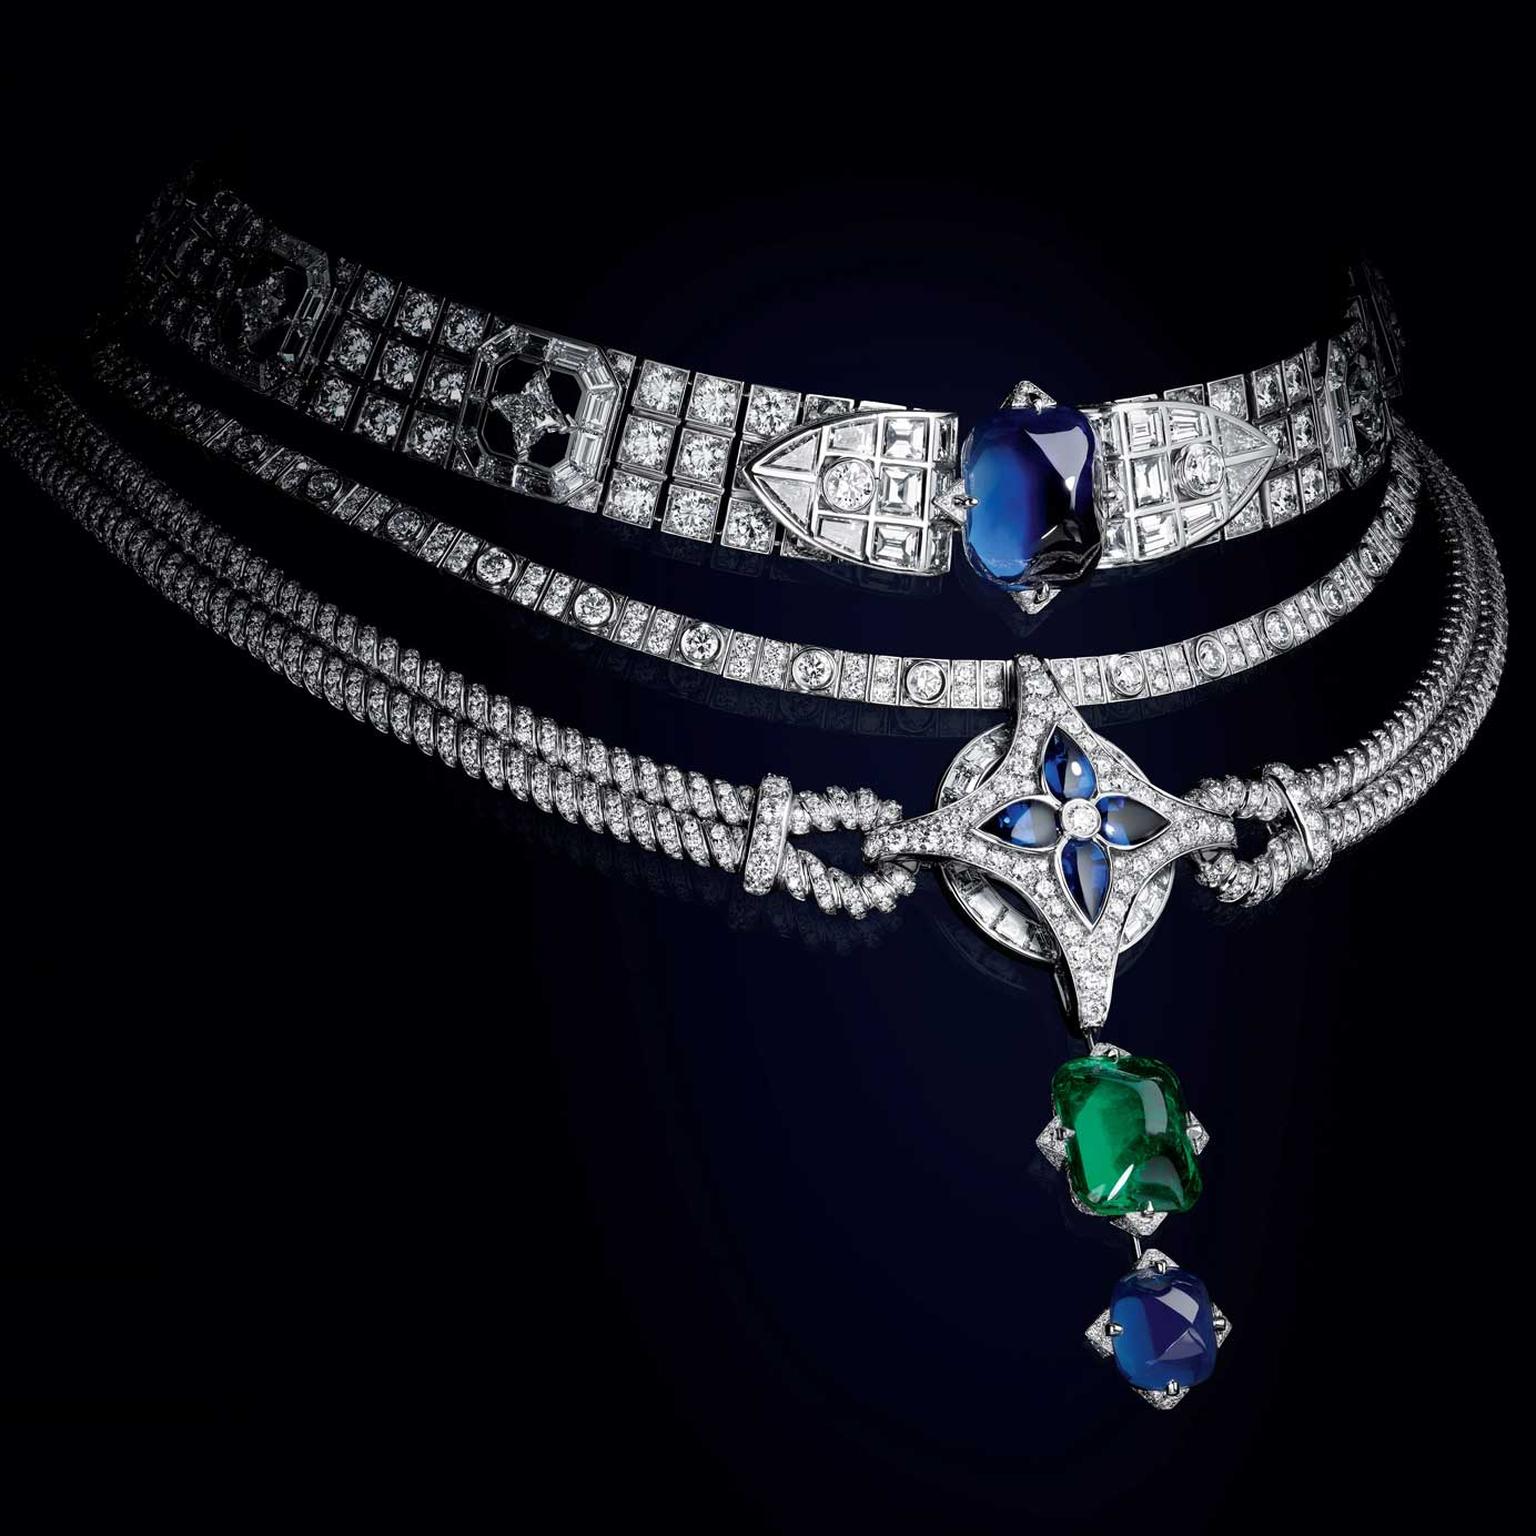 Le Mythe necklace by Louis Vuitton, Louis Vuitton